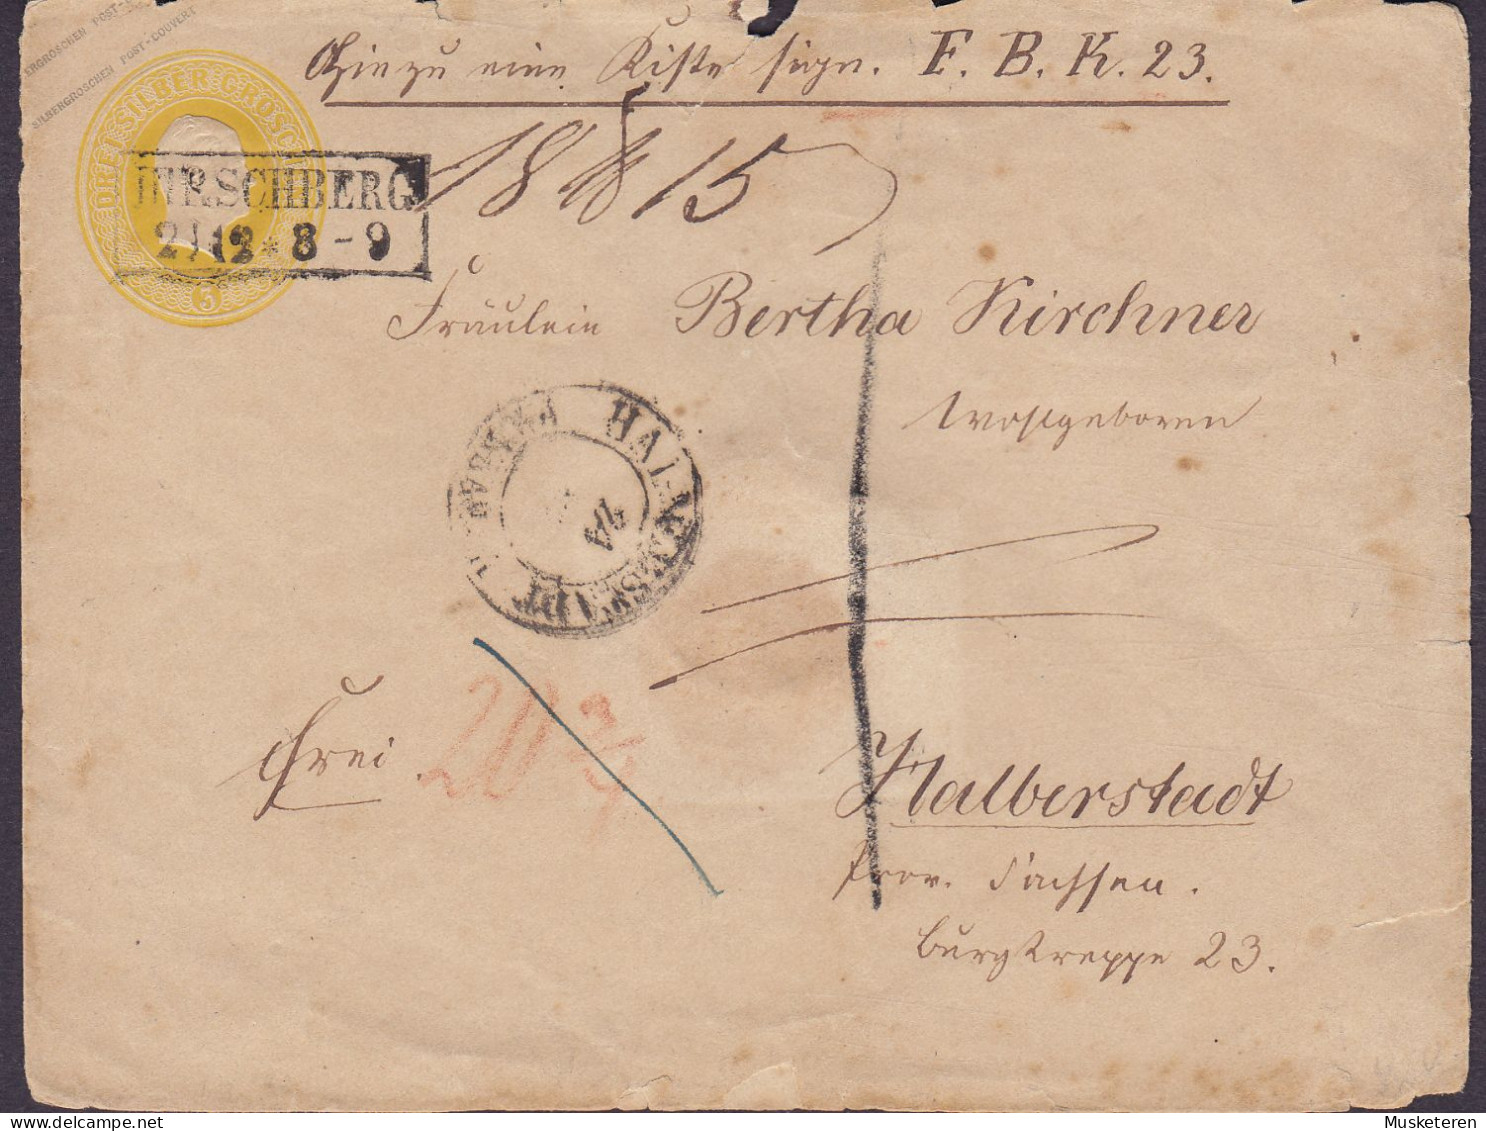 Preussen Postal Stationery Ganzsache 3 SILBER GROSCHEN Boxed HIRSCHBERG 2/12 8-9 Cds. HALBERSTADT (Arr.) Sachsen-Anhalt - Enteros Postales